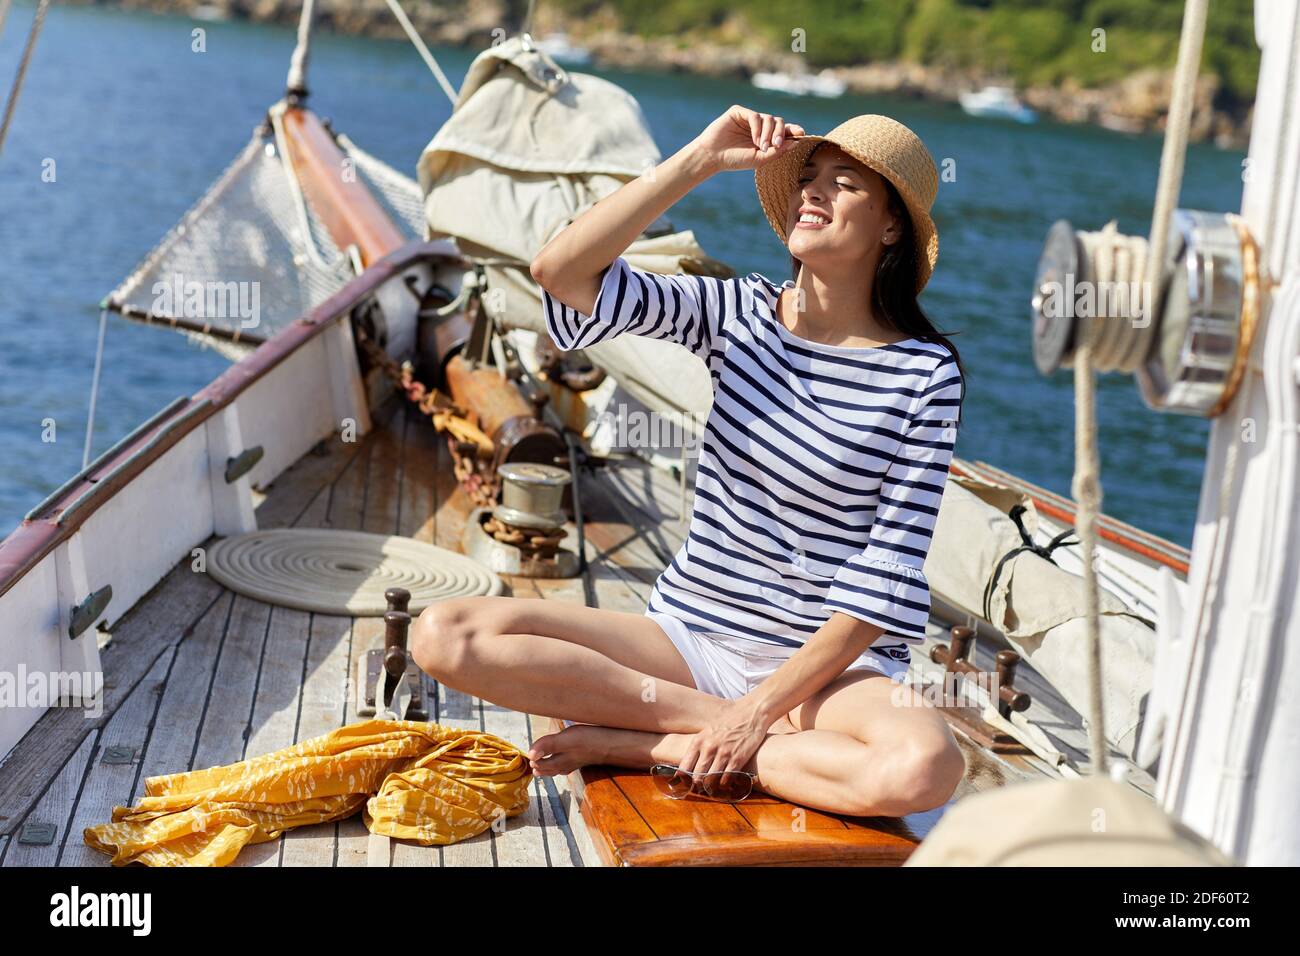 Jeune femme avec vêtements de voile, bateau à voile, port de Pasaia, Gipuzkoa, pays basque, Espagne, Europe Banque D'Images